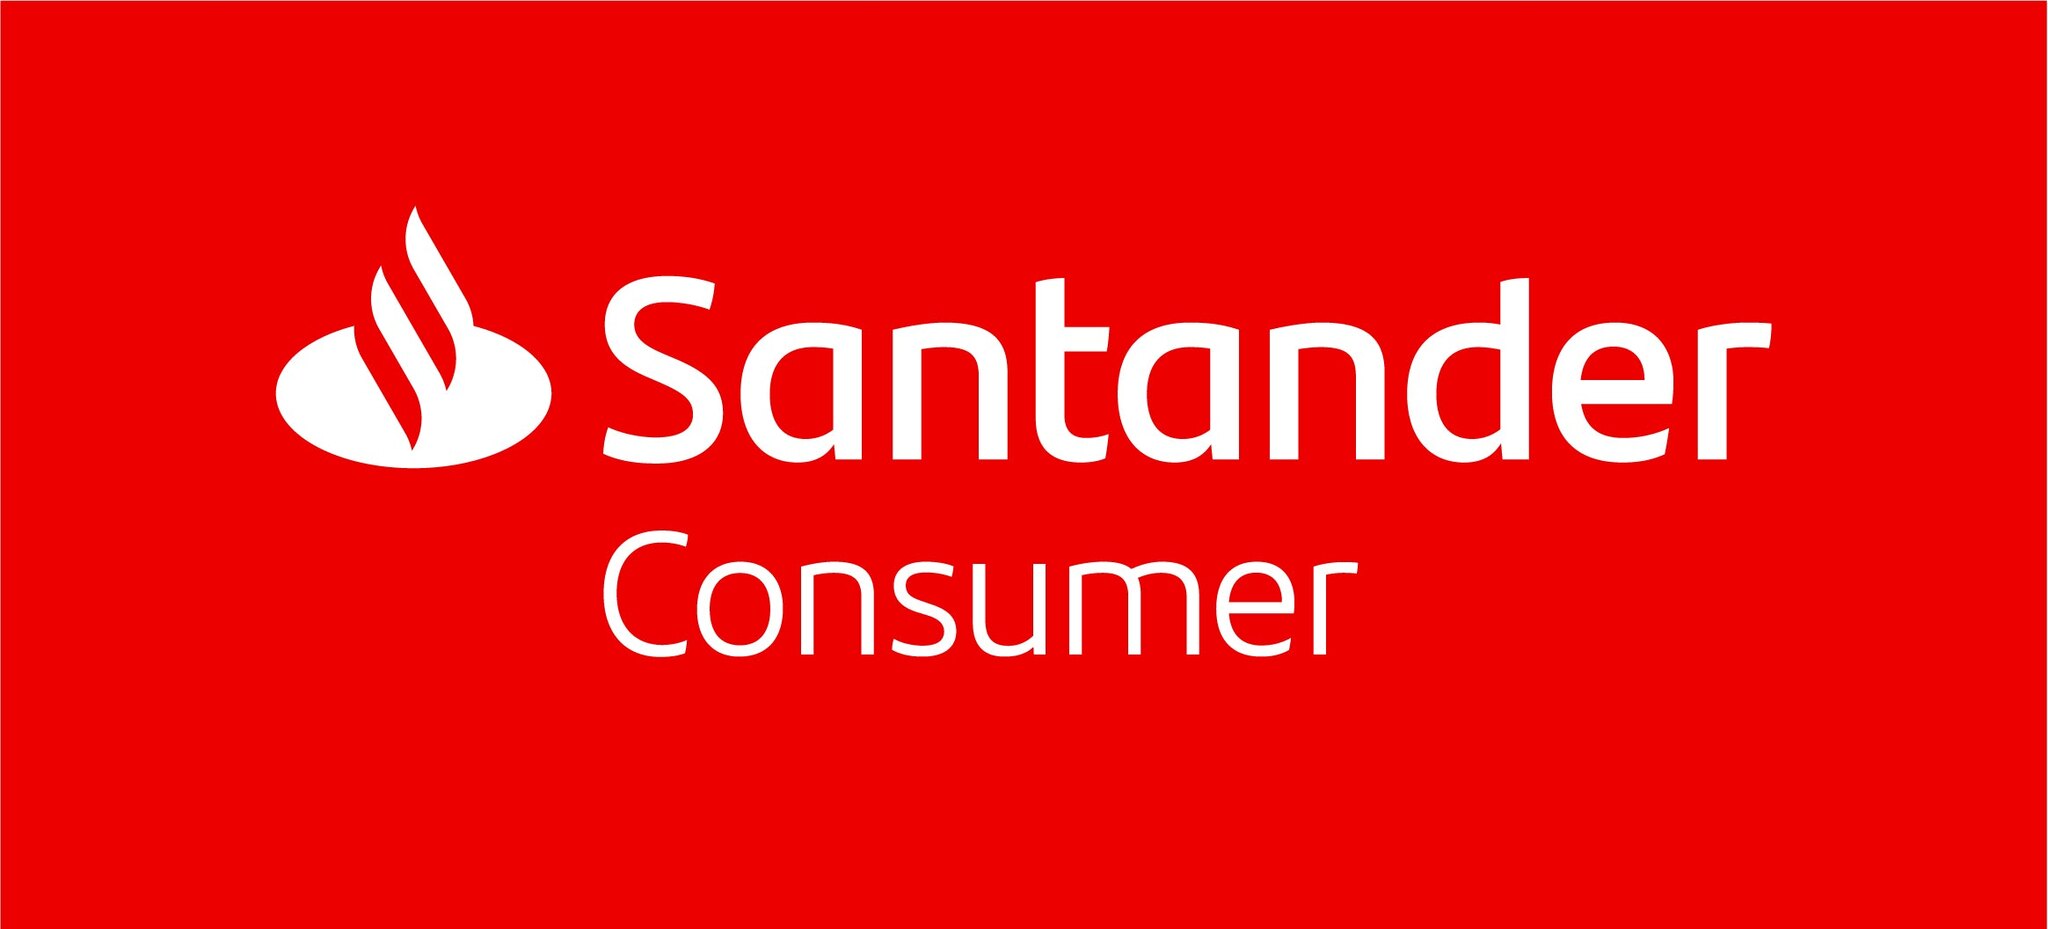 santander consumer